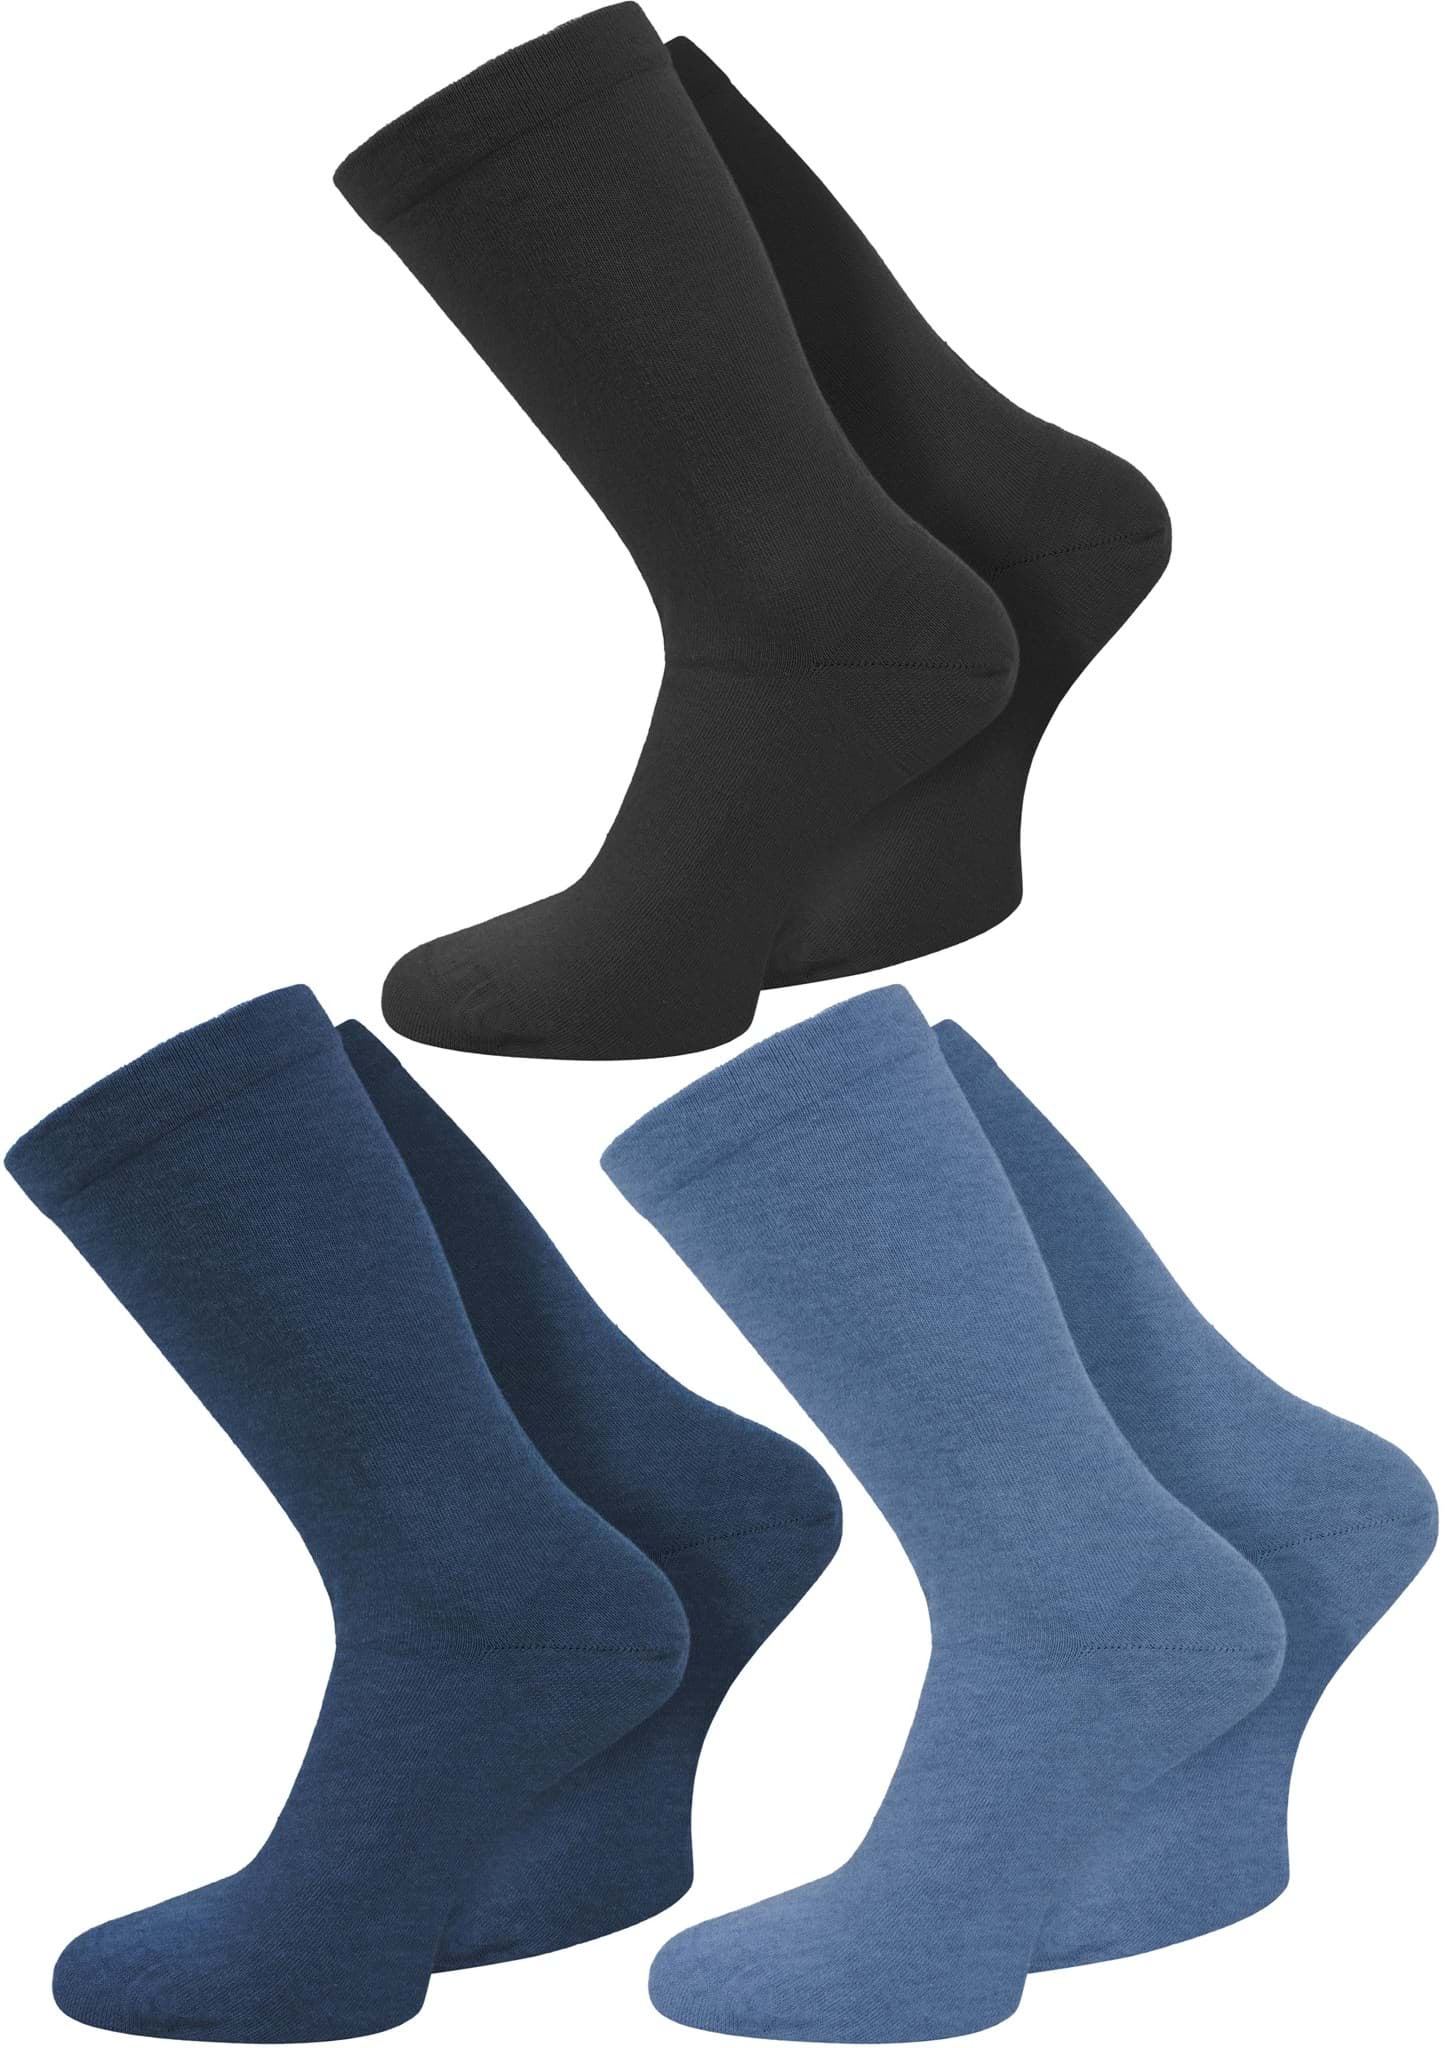 Bild von 3 Paar Gesundheitssocken mit Komfortbund Jeansblau/Mittelblau/Schwarz